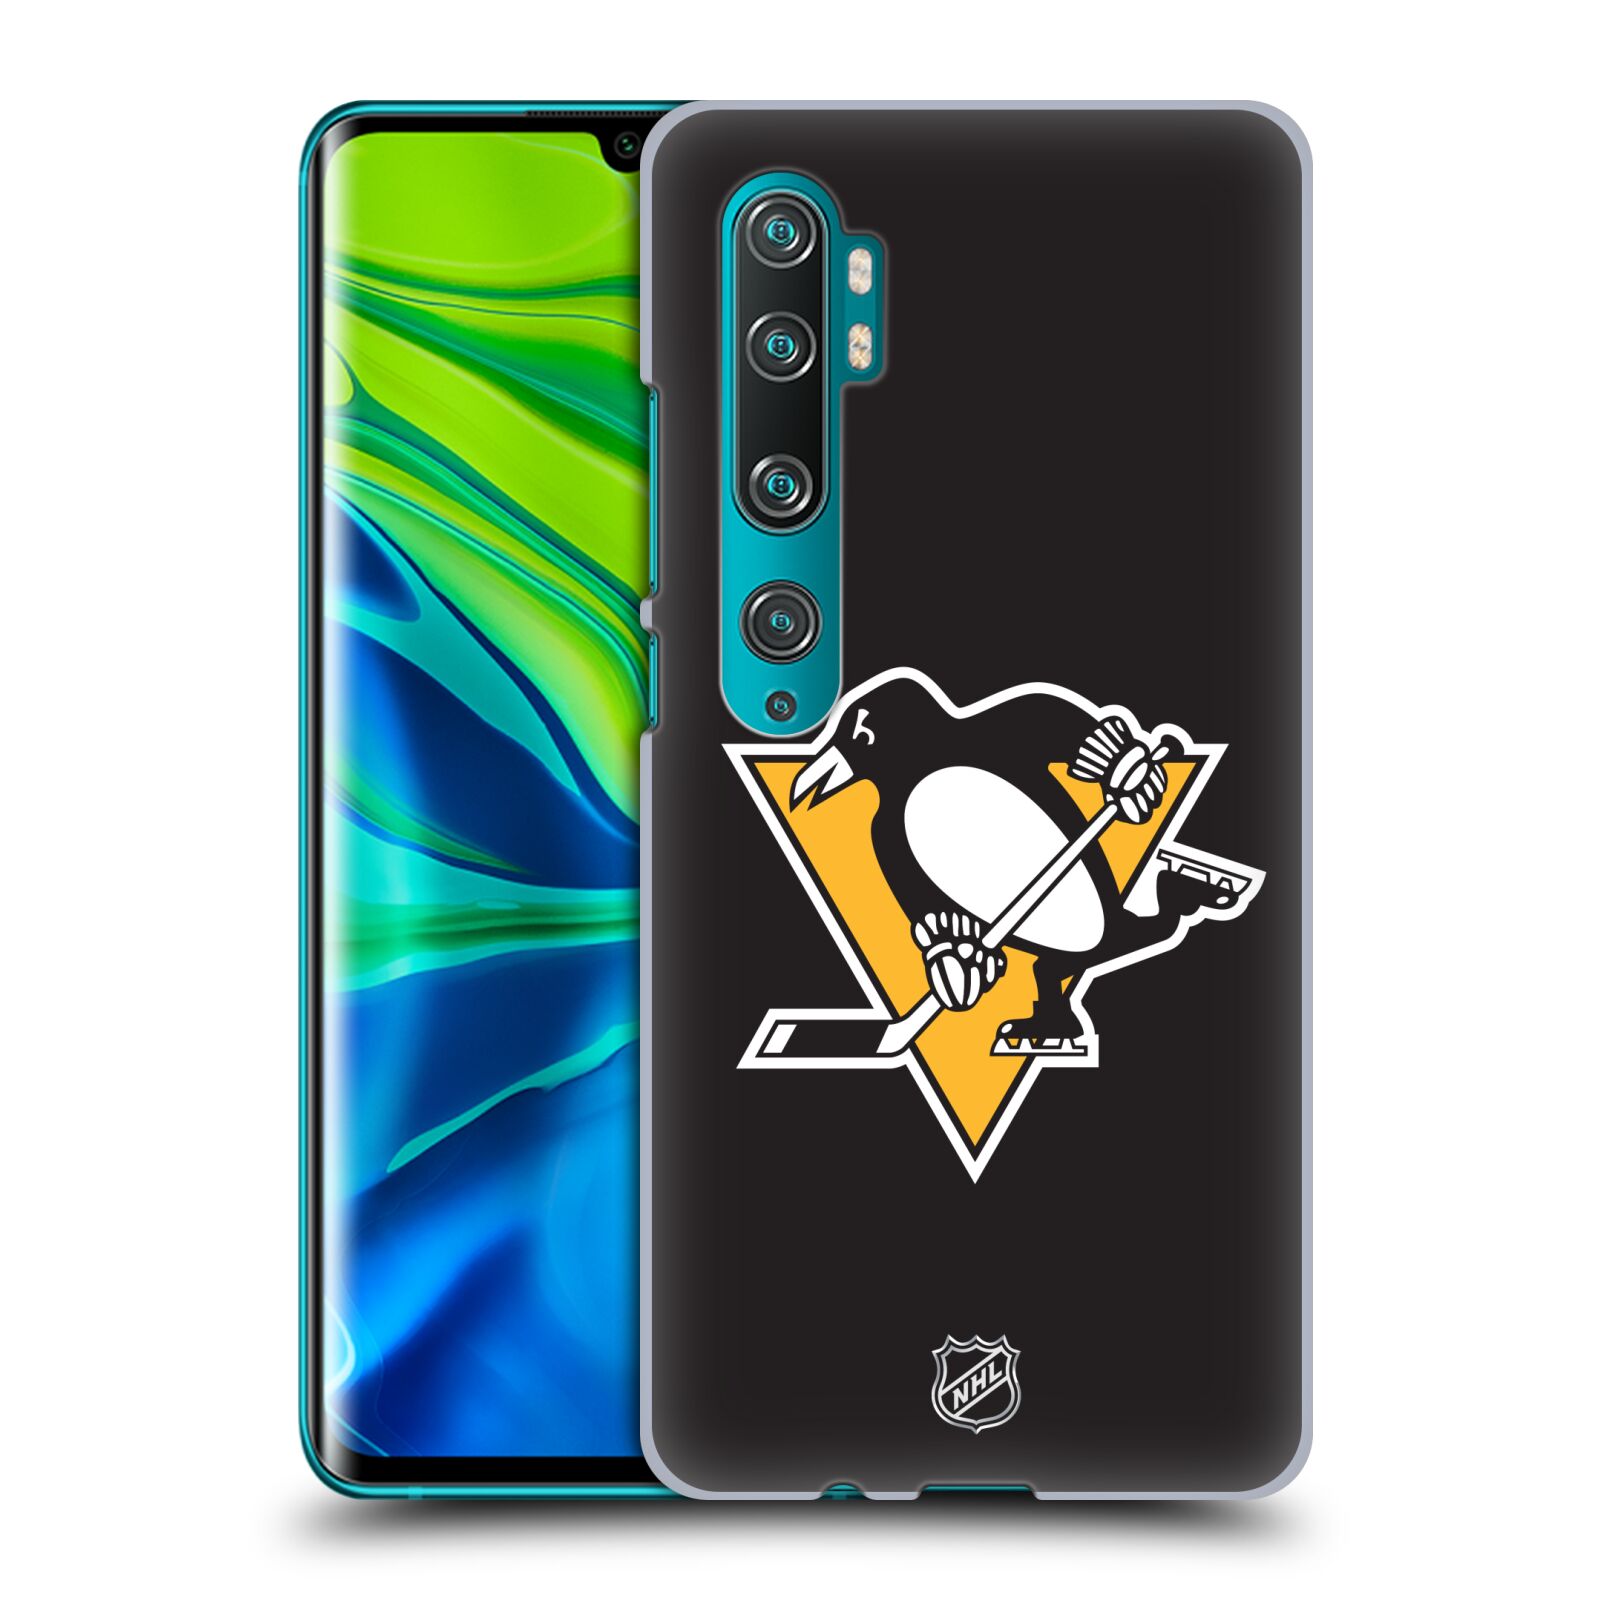 Pouzdro na mobil Xiaomi Mi Note 10 / Mi Note 10 Pro - HEAD CASE - Hokej NHL - Pittsburgh Penguins - černé pozadí znak